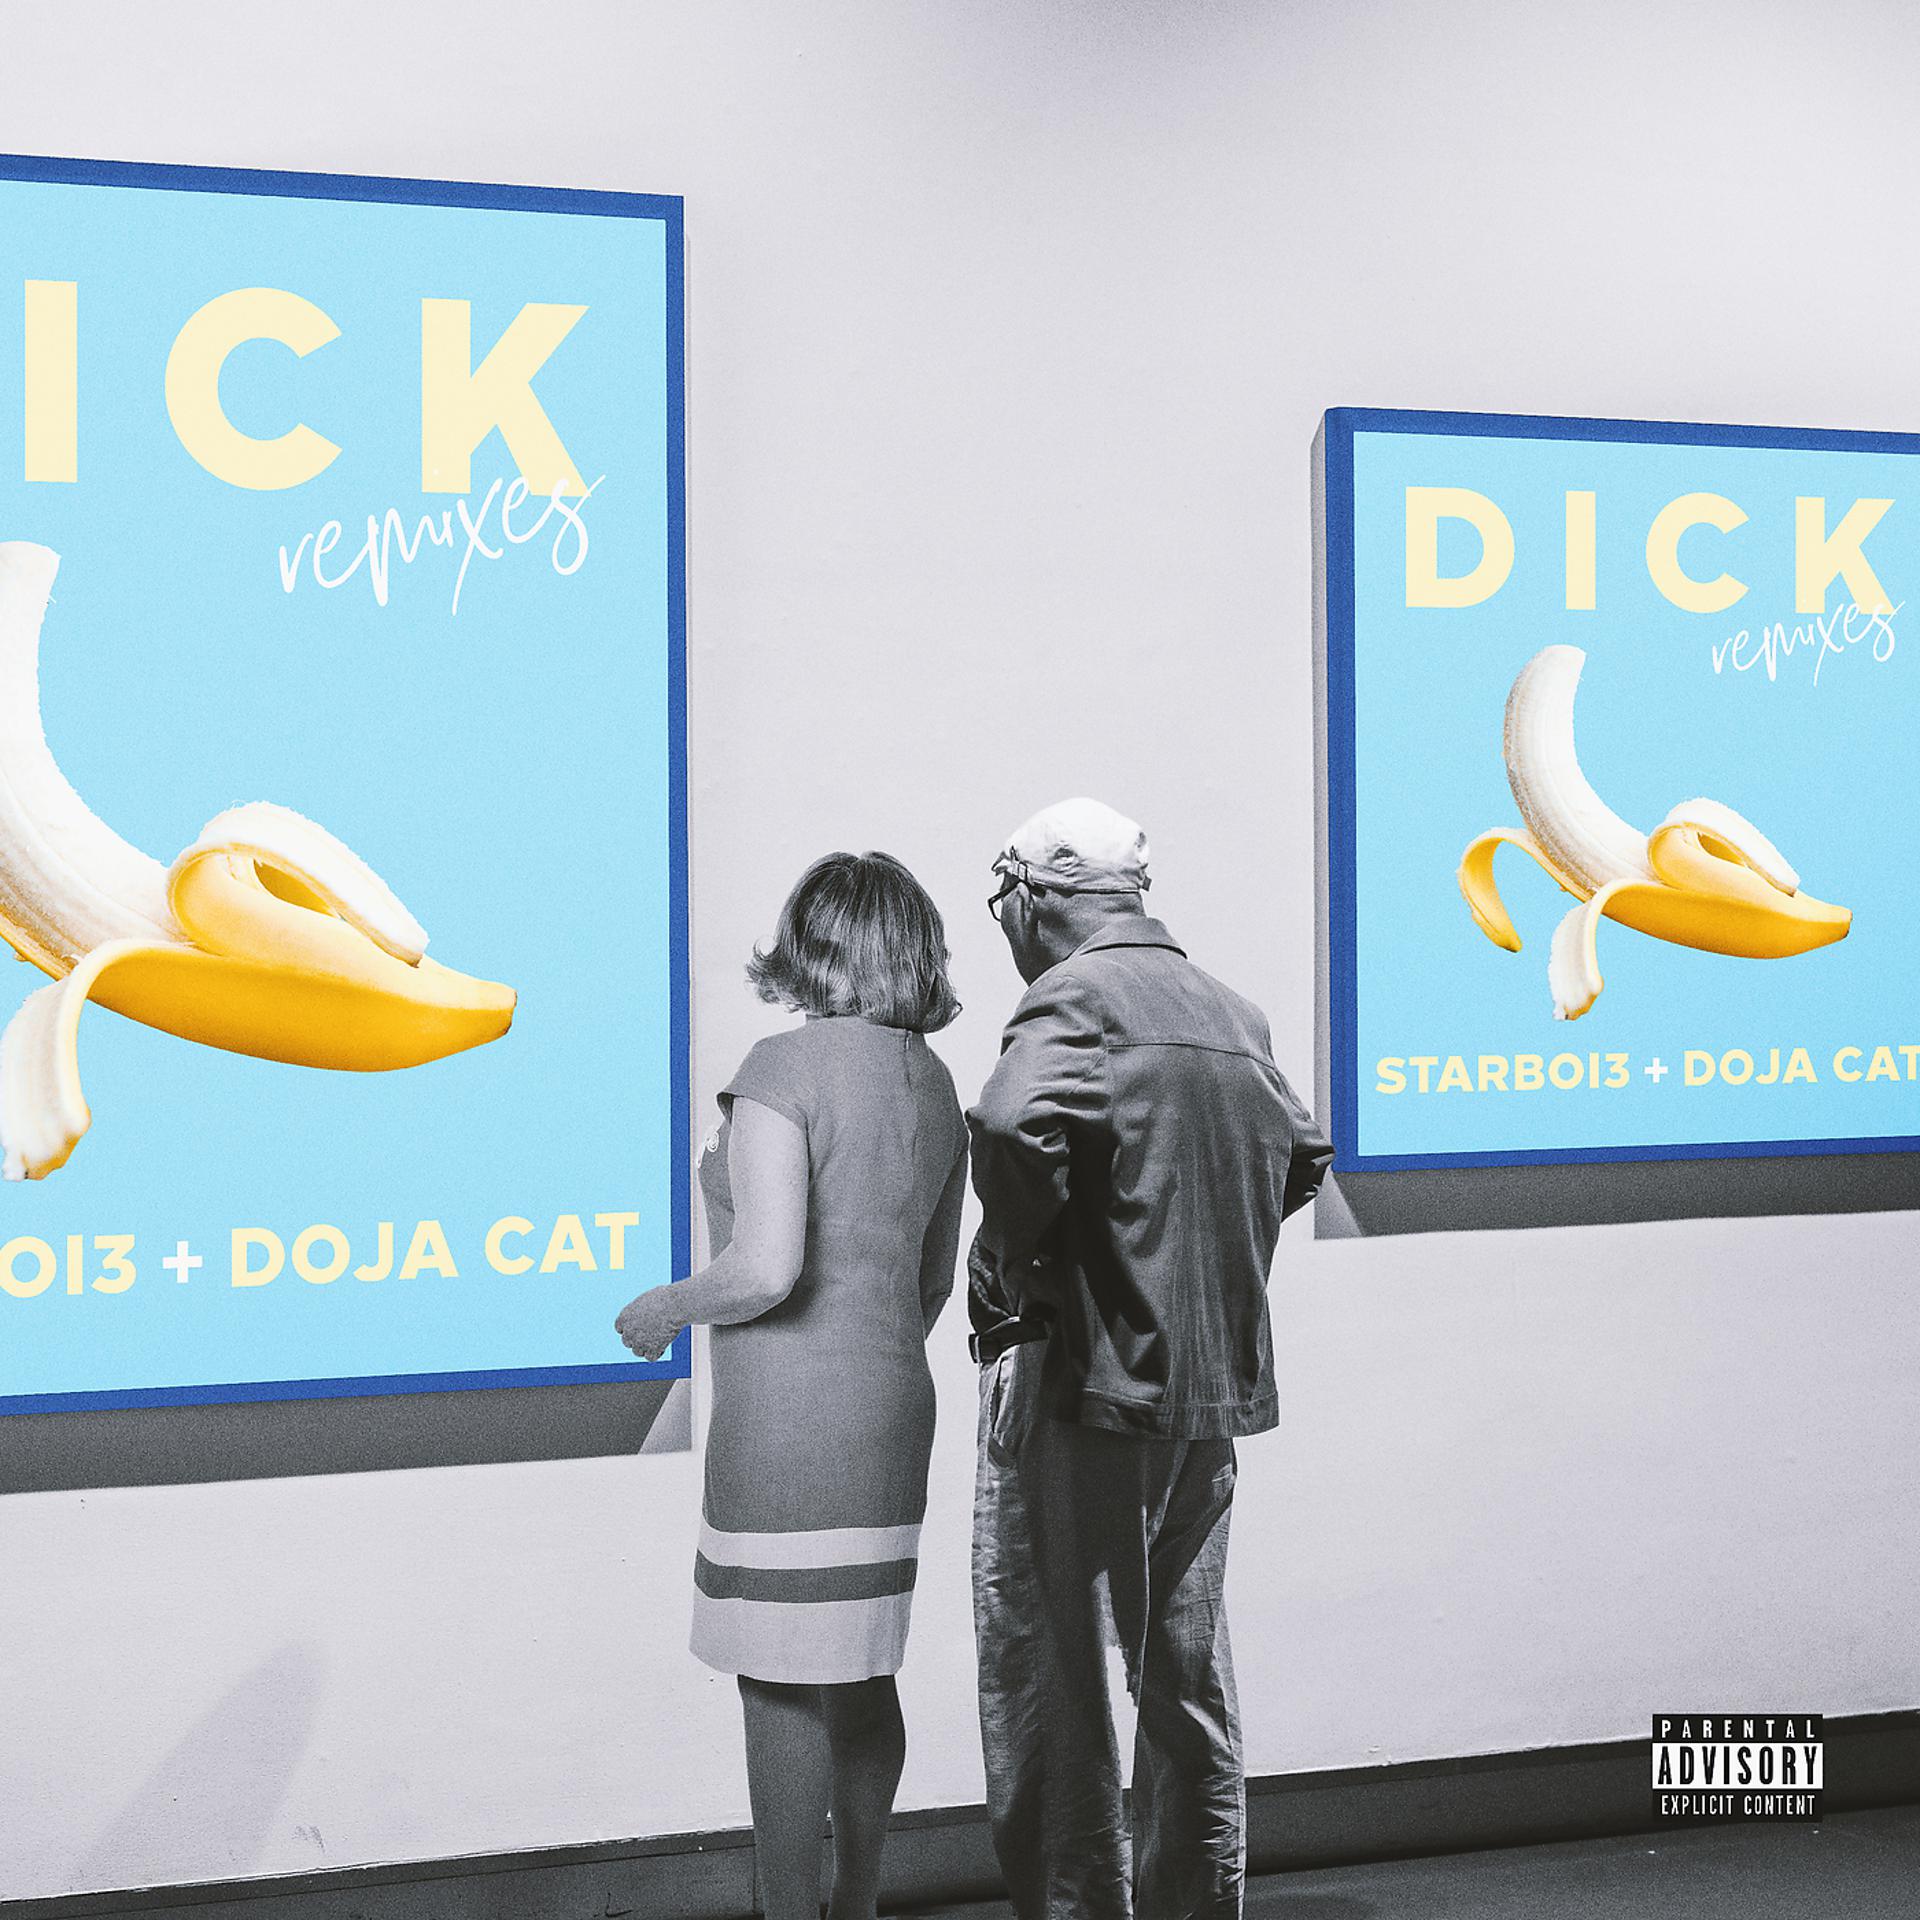 Dick song. Dick Doja Cat. Dick starboi3, Doja Cat. Starboi3 feat. Doja Cat. Dick feat Doja Cat.